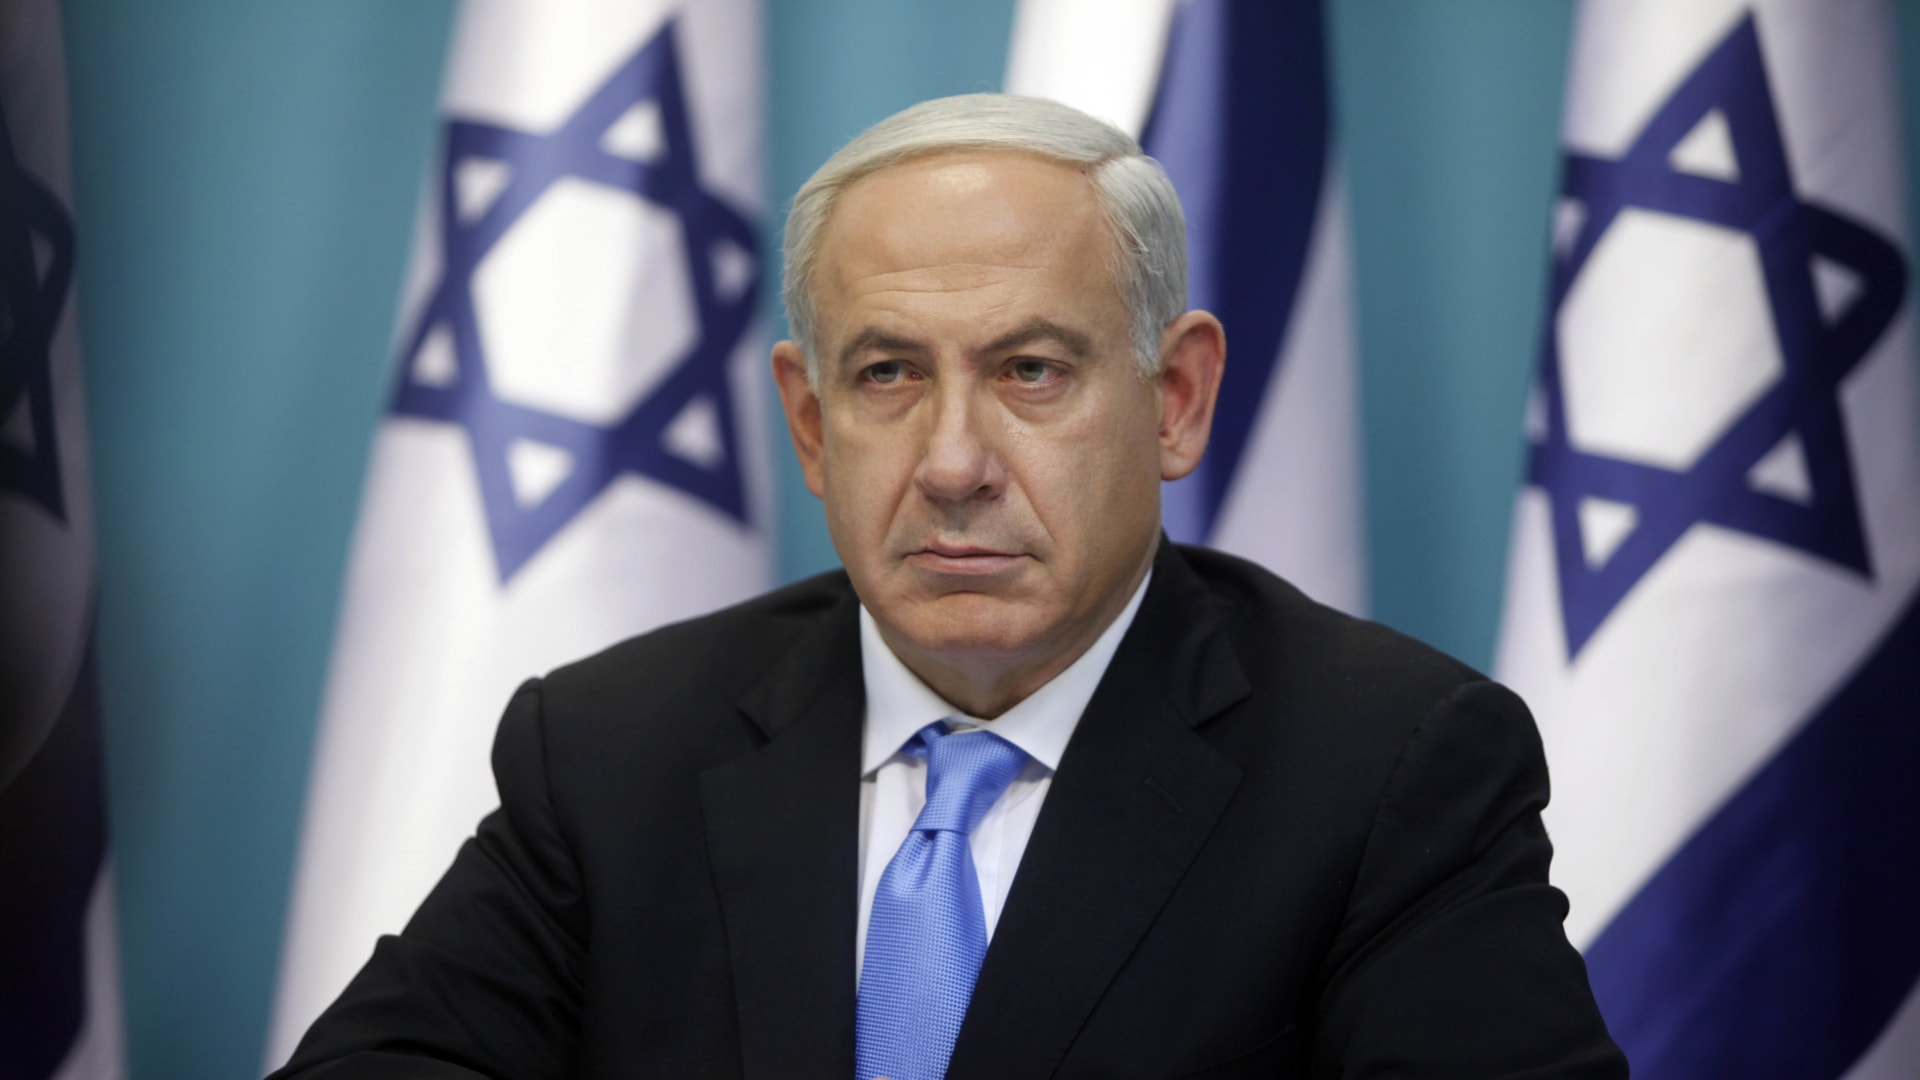 من هو بنيامين نتنياهو وكيف شكل إسرائيل الحديثة؟